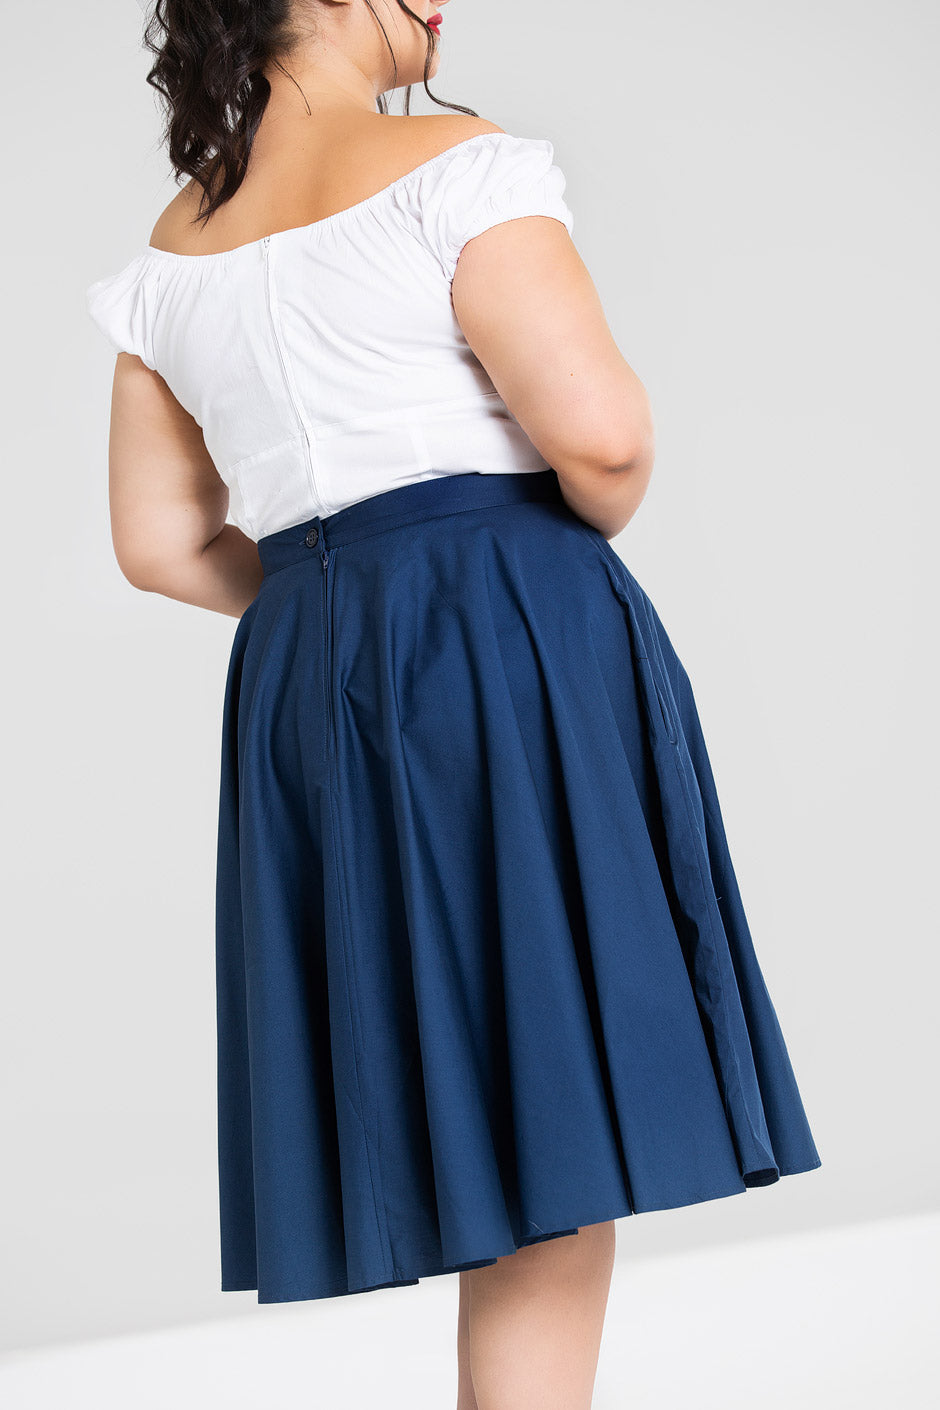 Paula 50'S Skirt